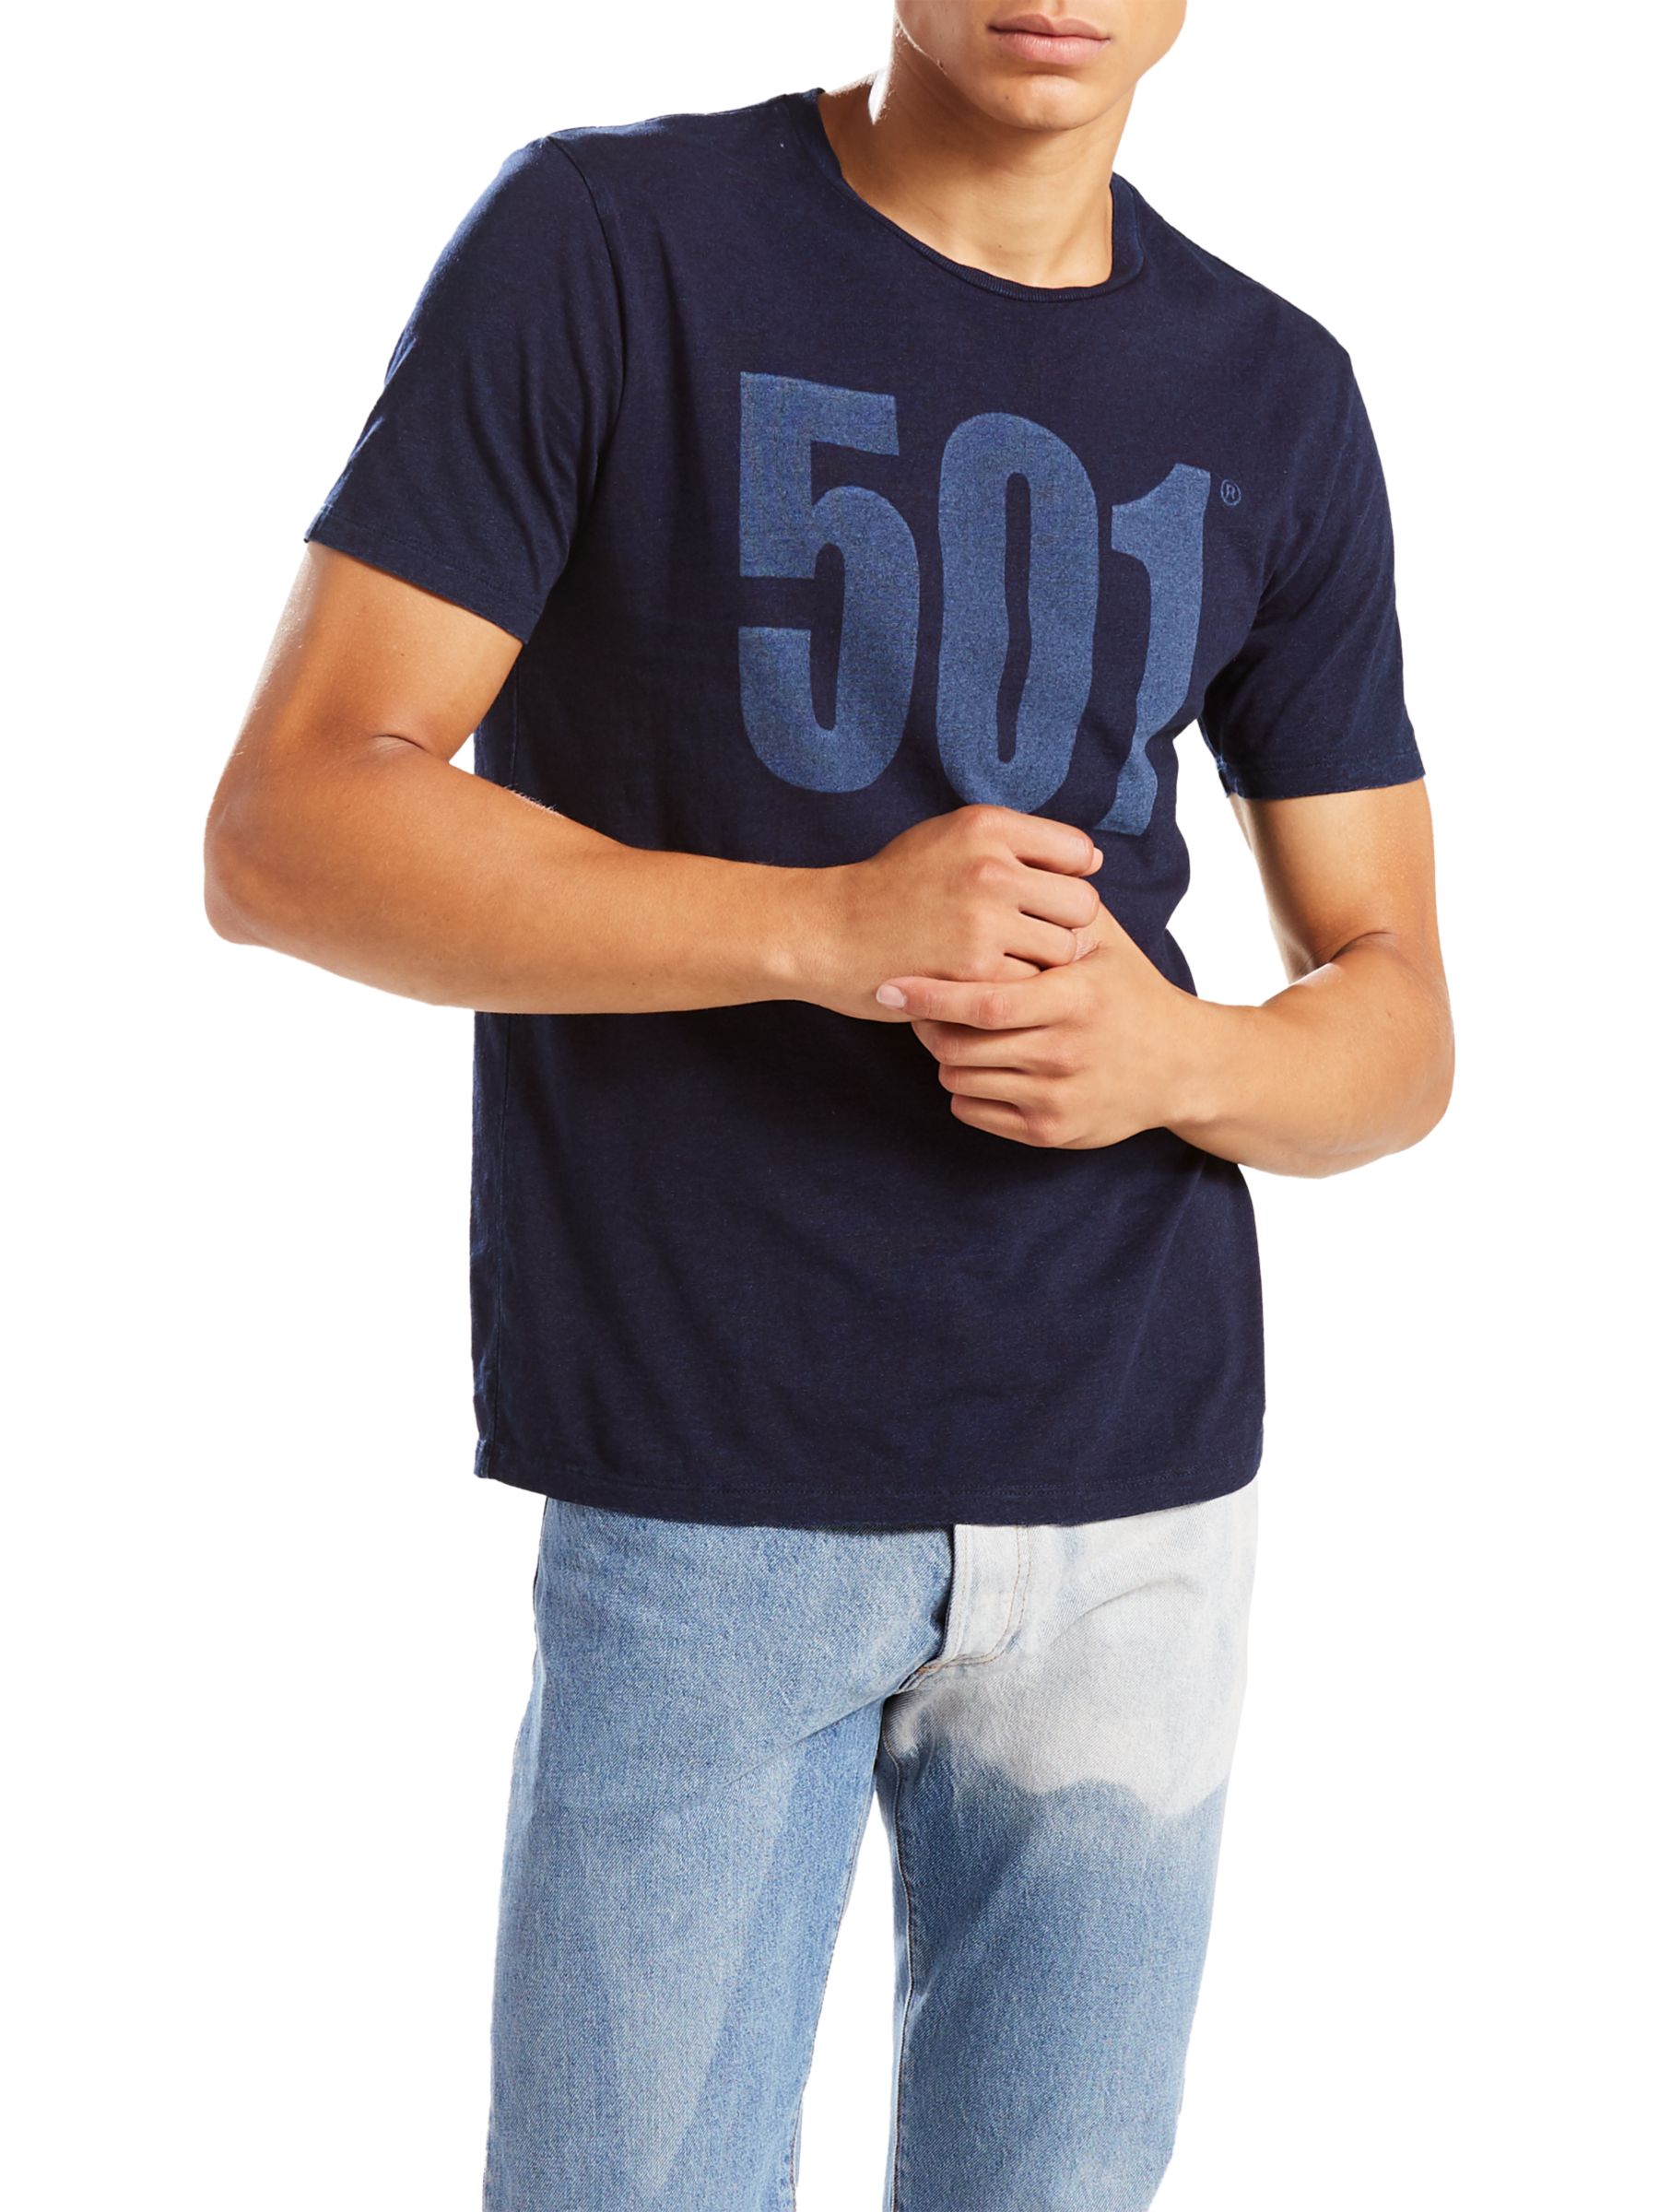 levi 501 t-shirt